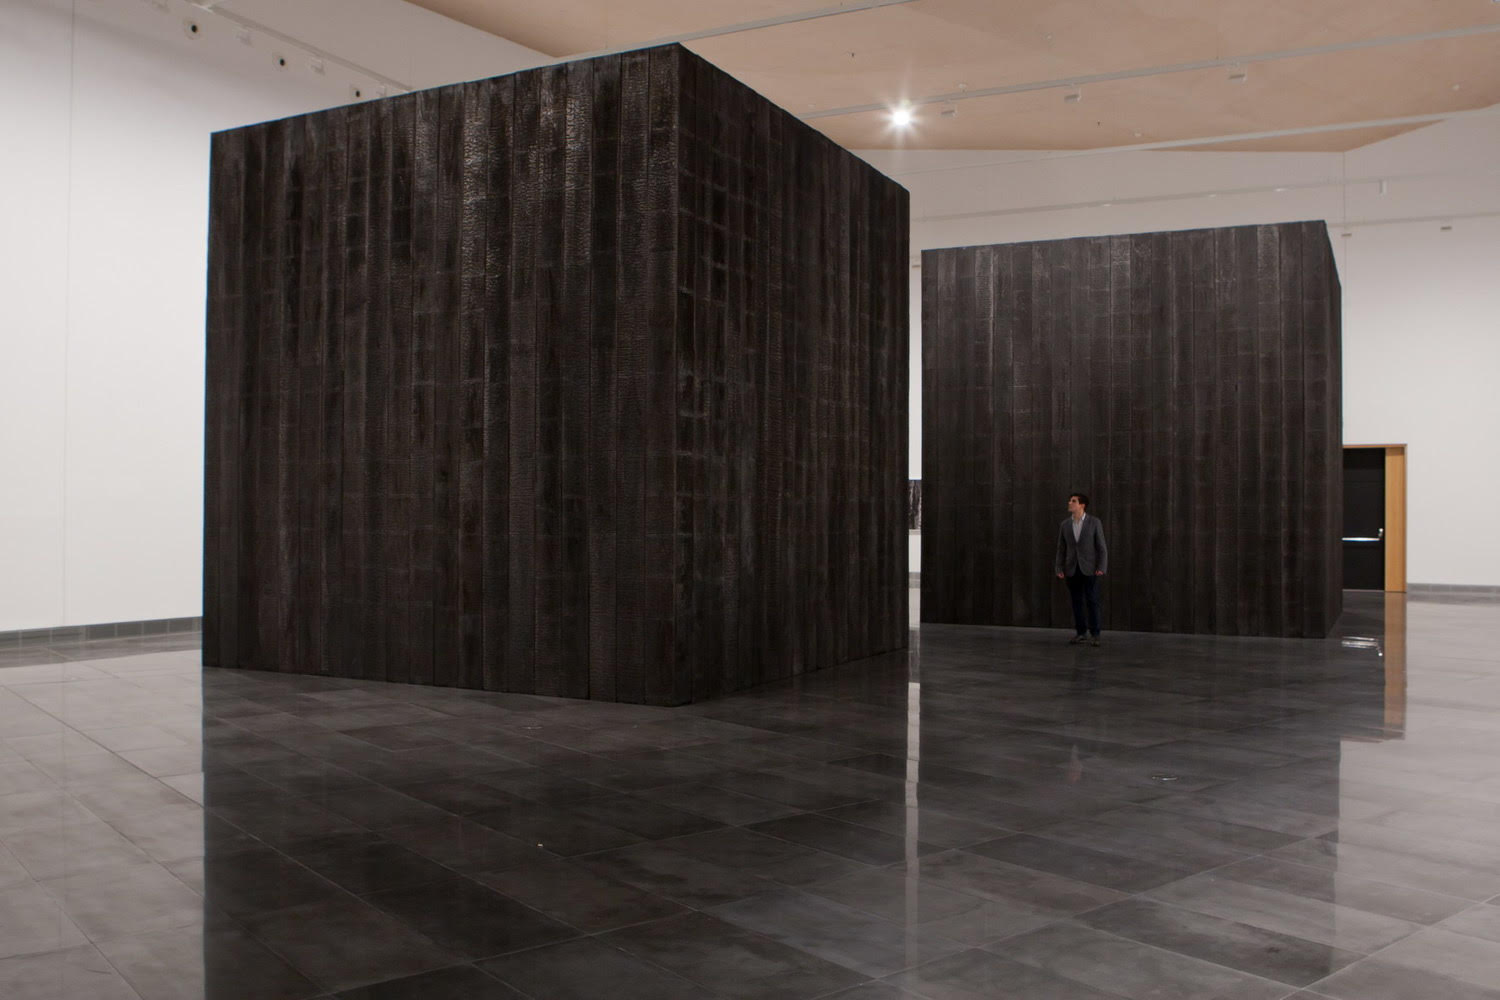 Onesta colabora con el arte y la cultura a través del mecenazgo de The Black Forest, obra expuesta en el Museo Universidad de Navarra - Onesta